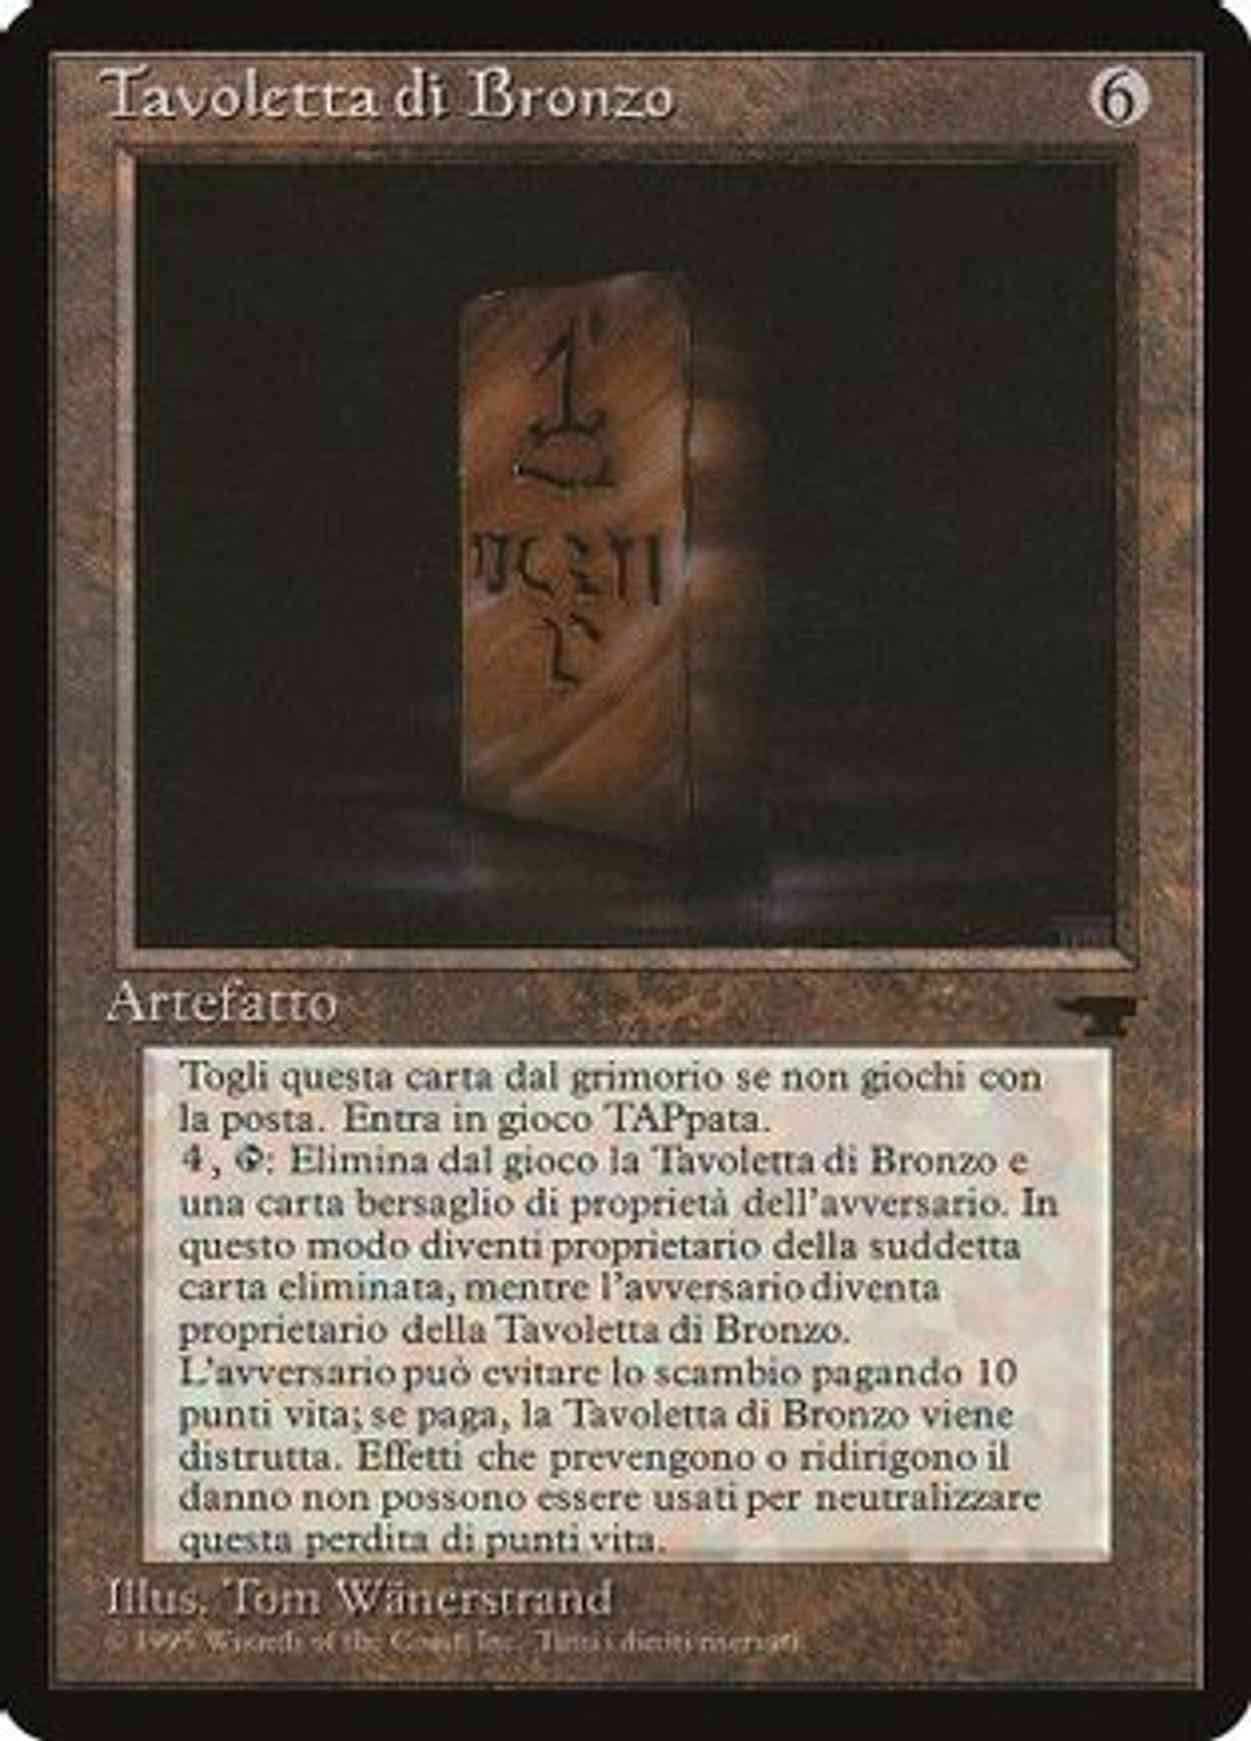 Bronze Tablet (Italian) - "Tavoletta di Bronzo" magic card front